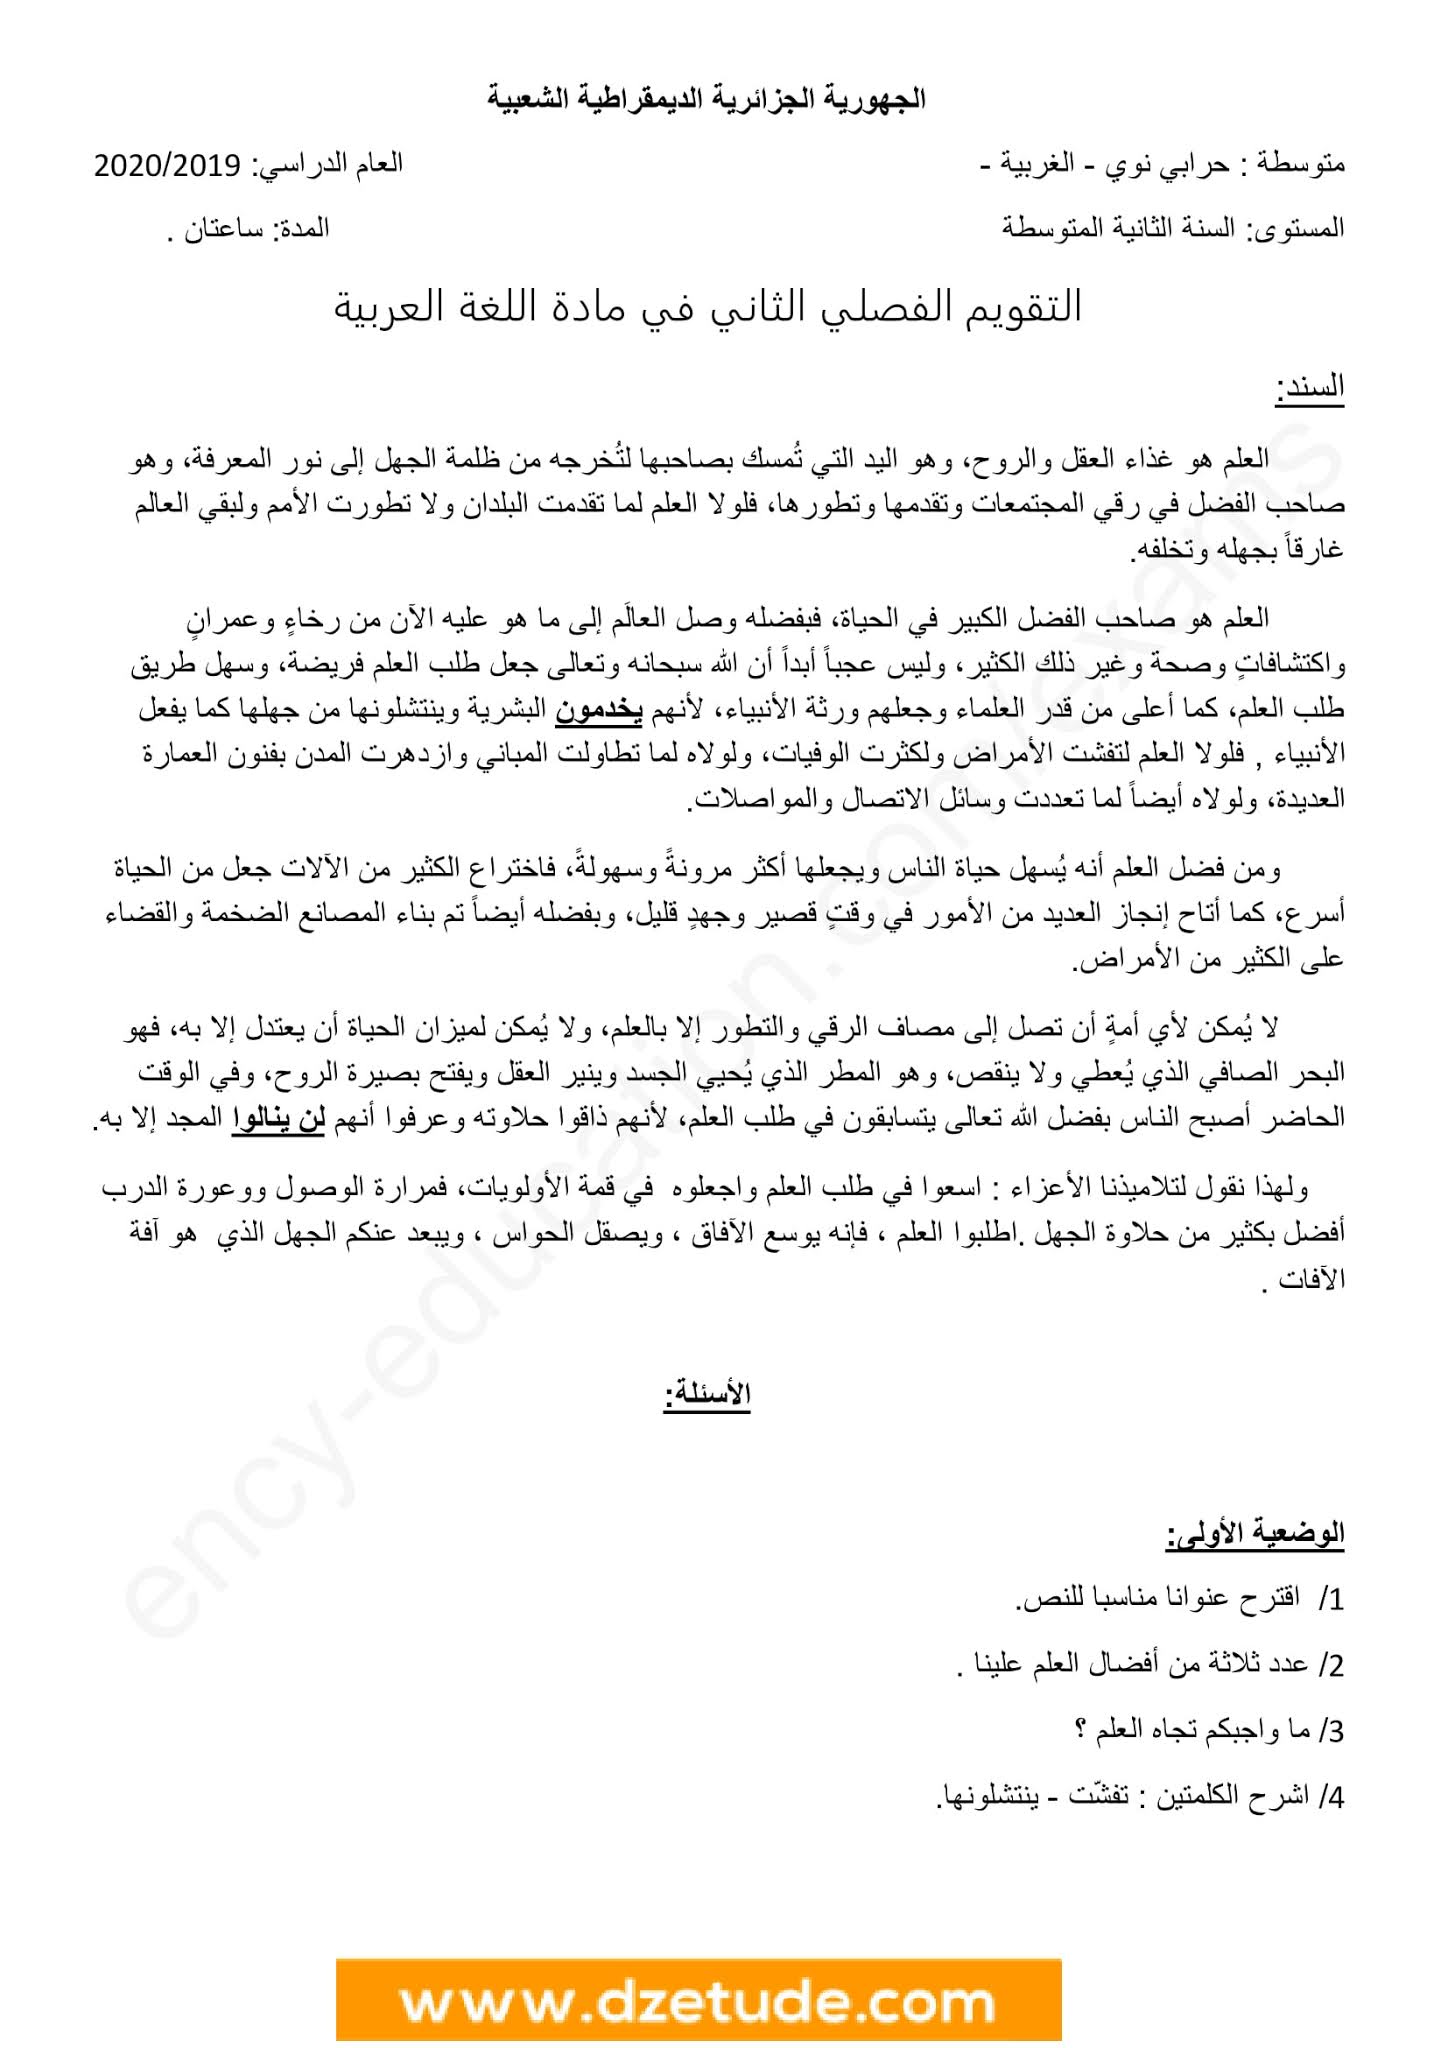 إختبار اللغة العربية الفصل الثاني للسنة الثانية متوسط - الجيل الثاني نموذج 2